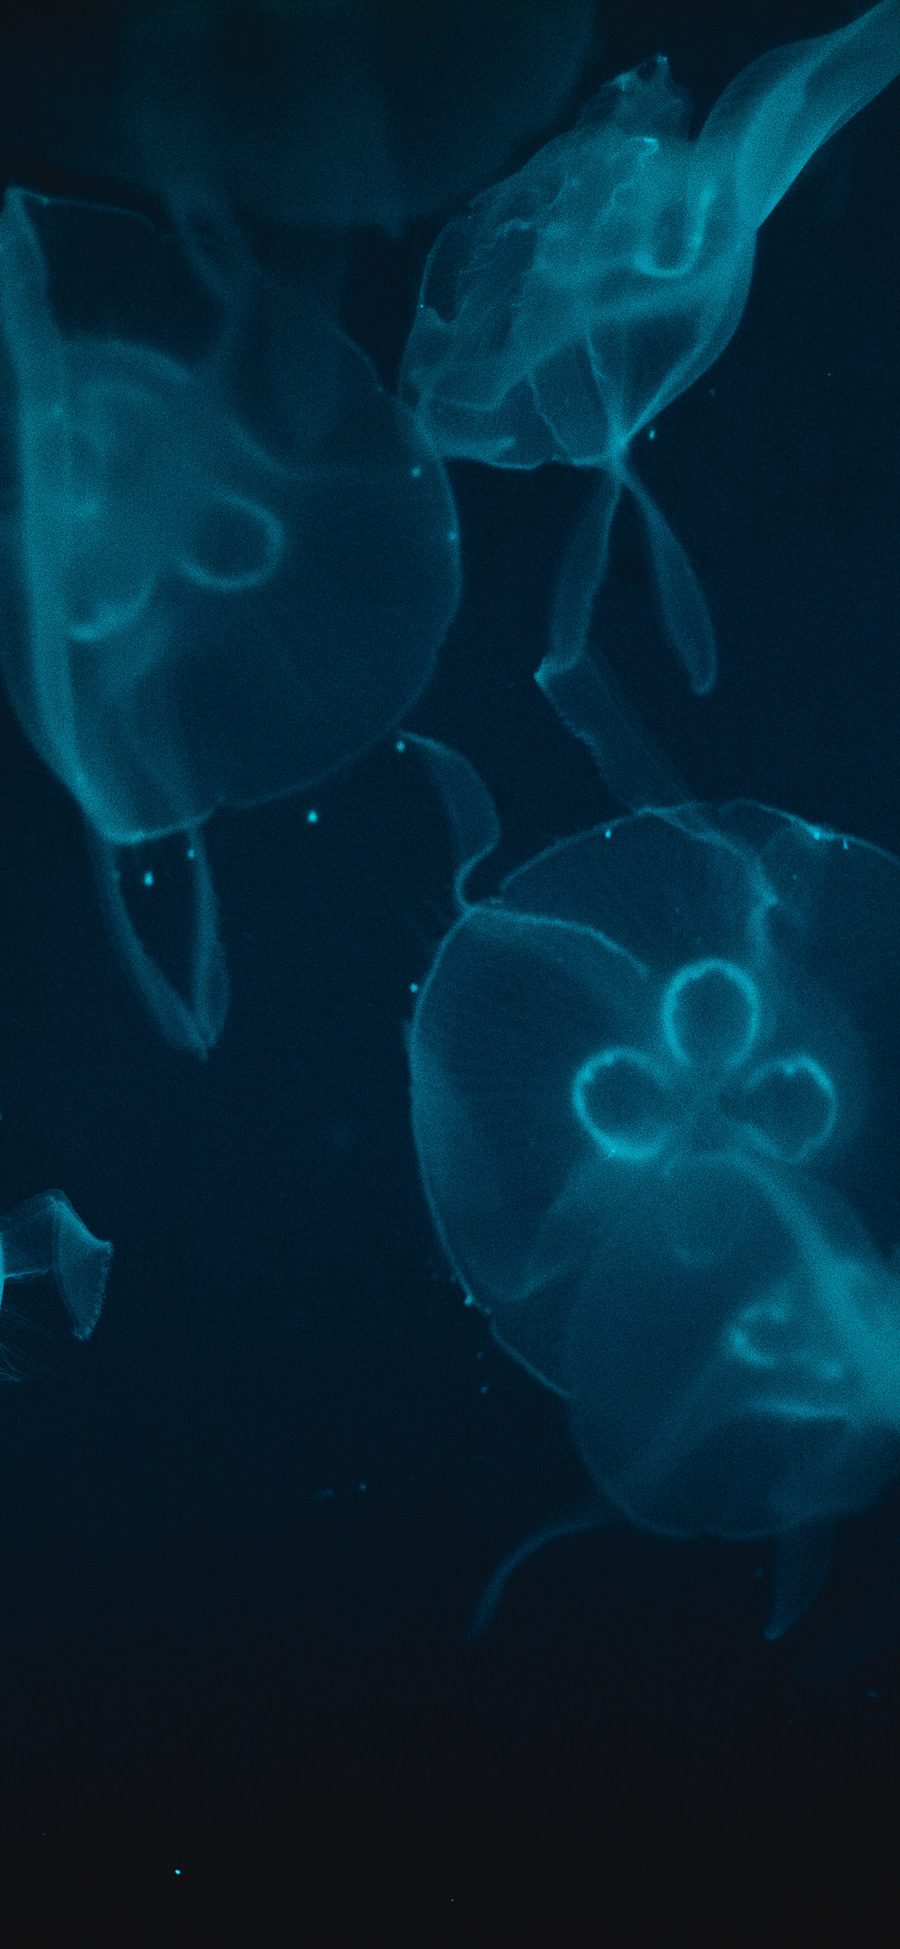 [2436×1125]水母 浮游 透明 海洋生物 苹果手机壁纸图片